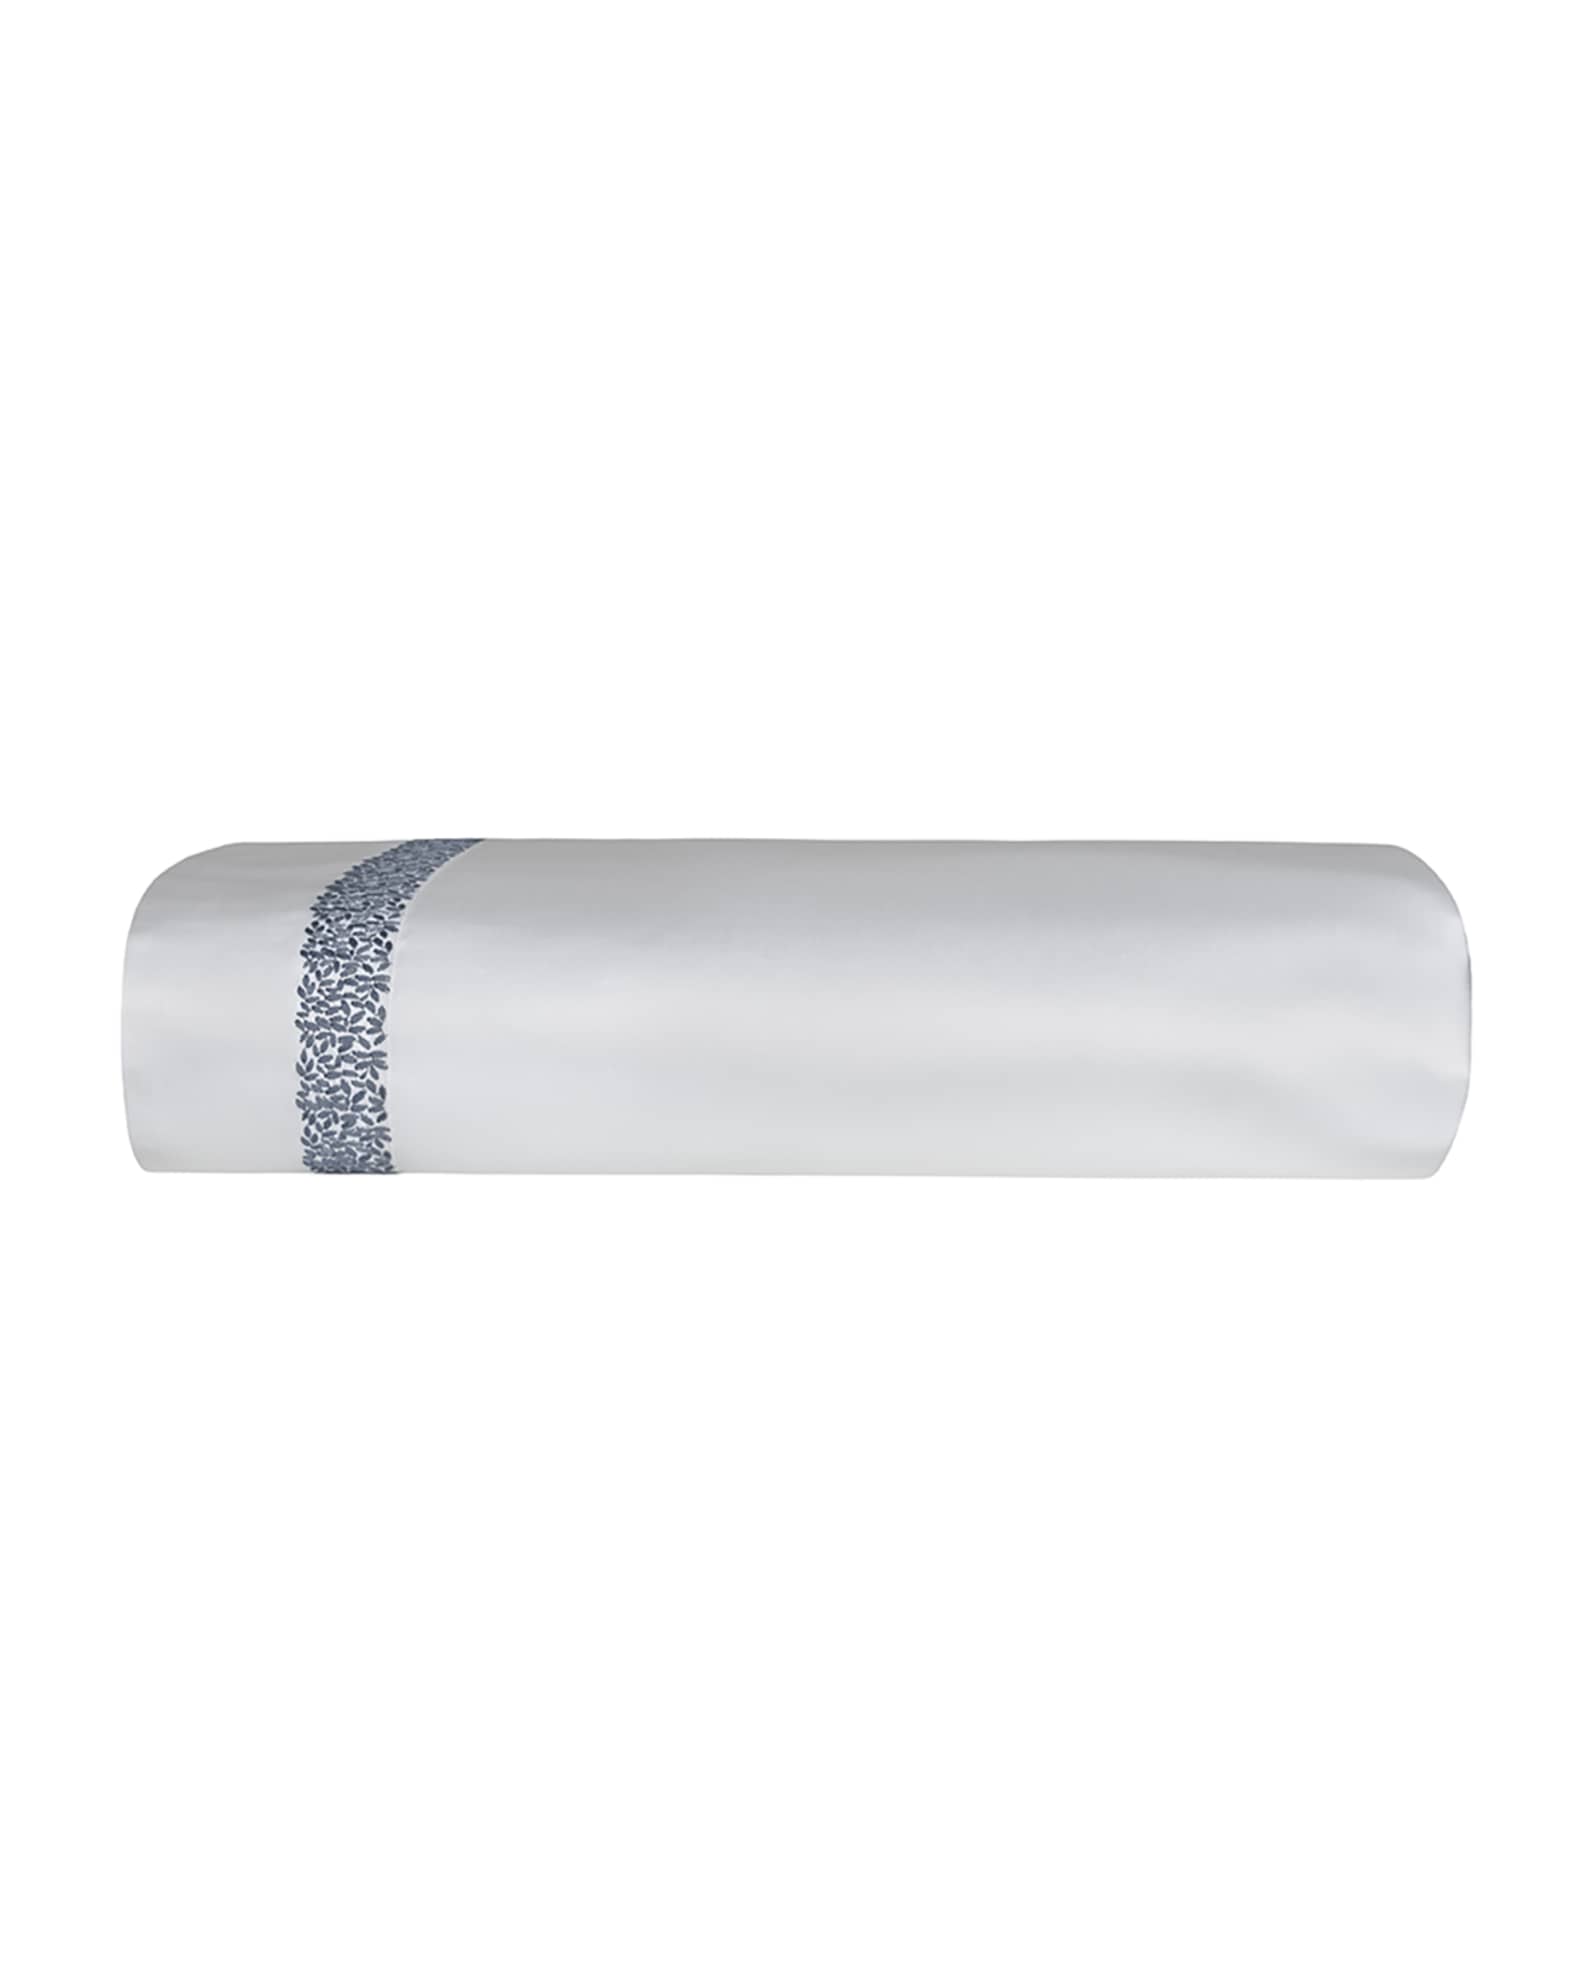 Bovi Fine Linens Malone King Sheet Set, White/Blue | Neiman Marcus